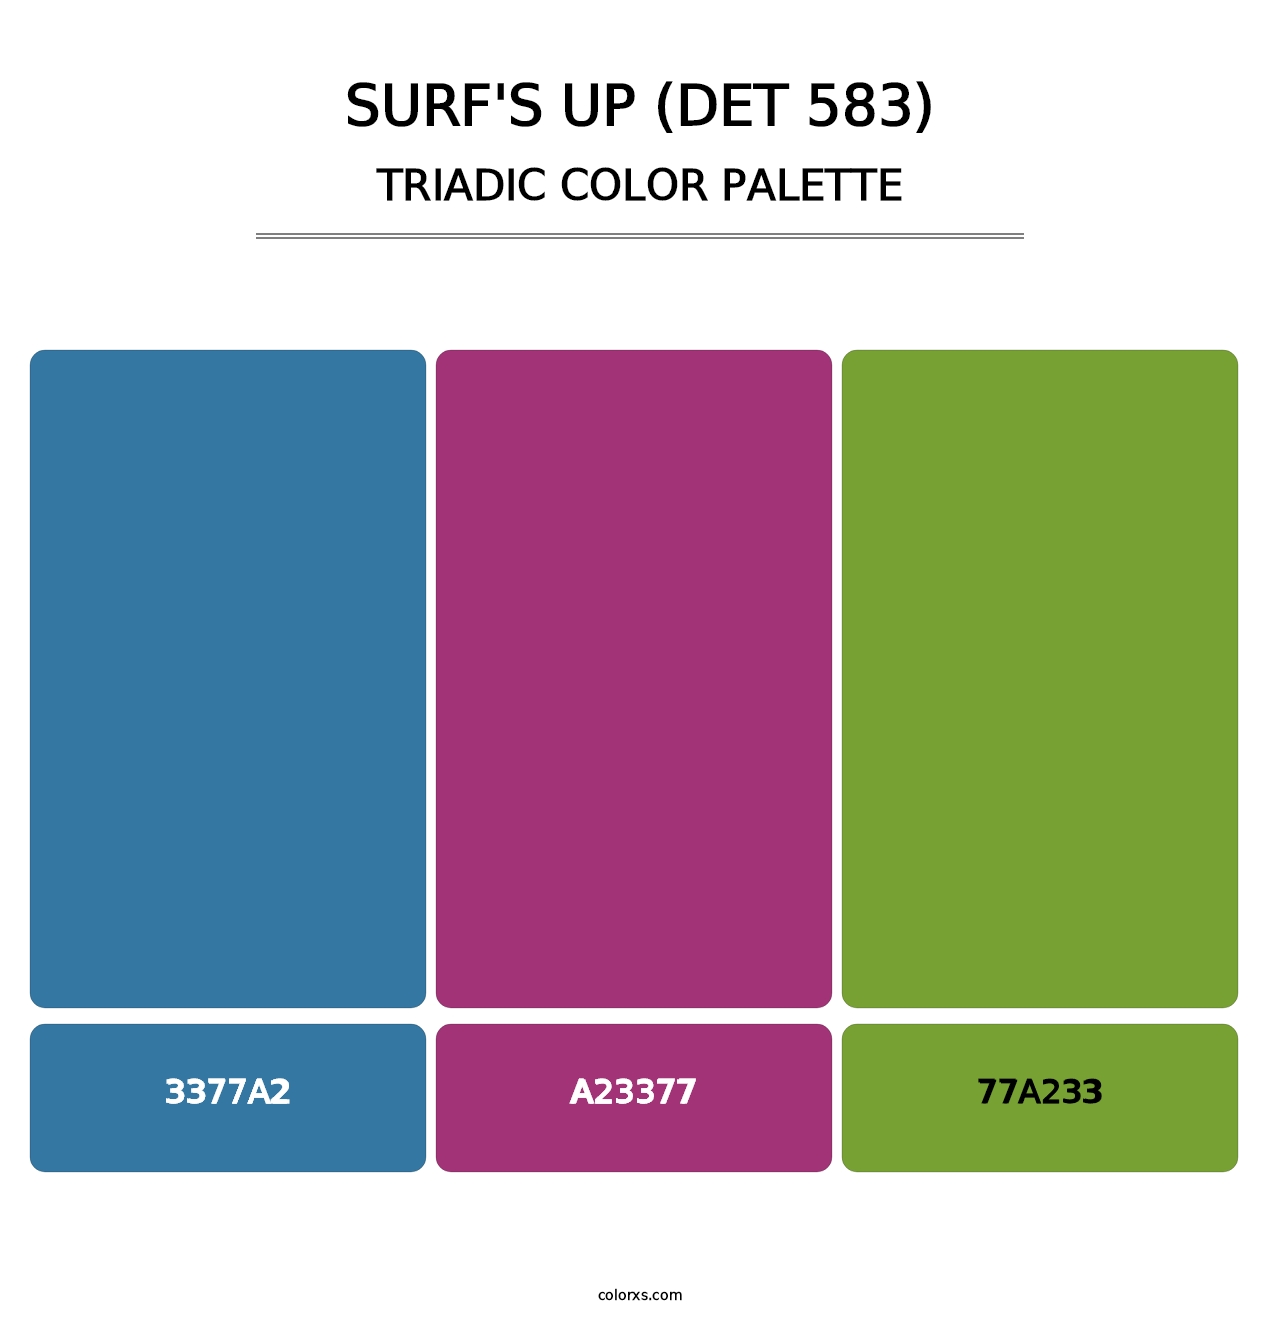 Surf's Up (DET 583) - Triadic Color Palette